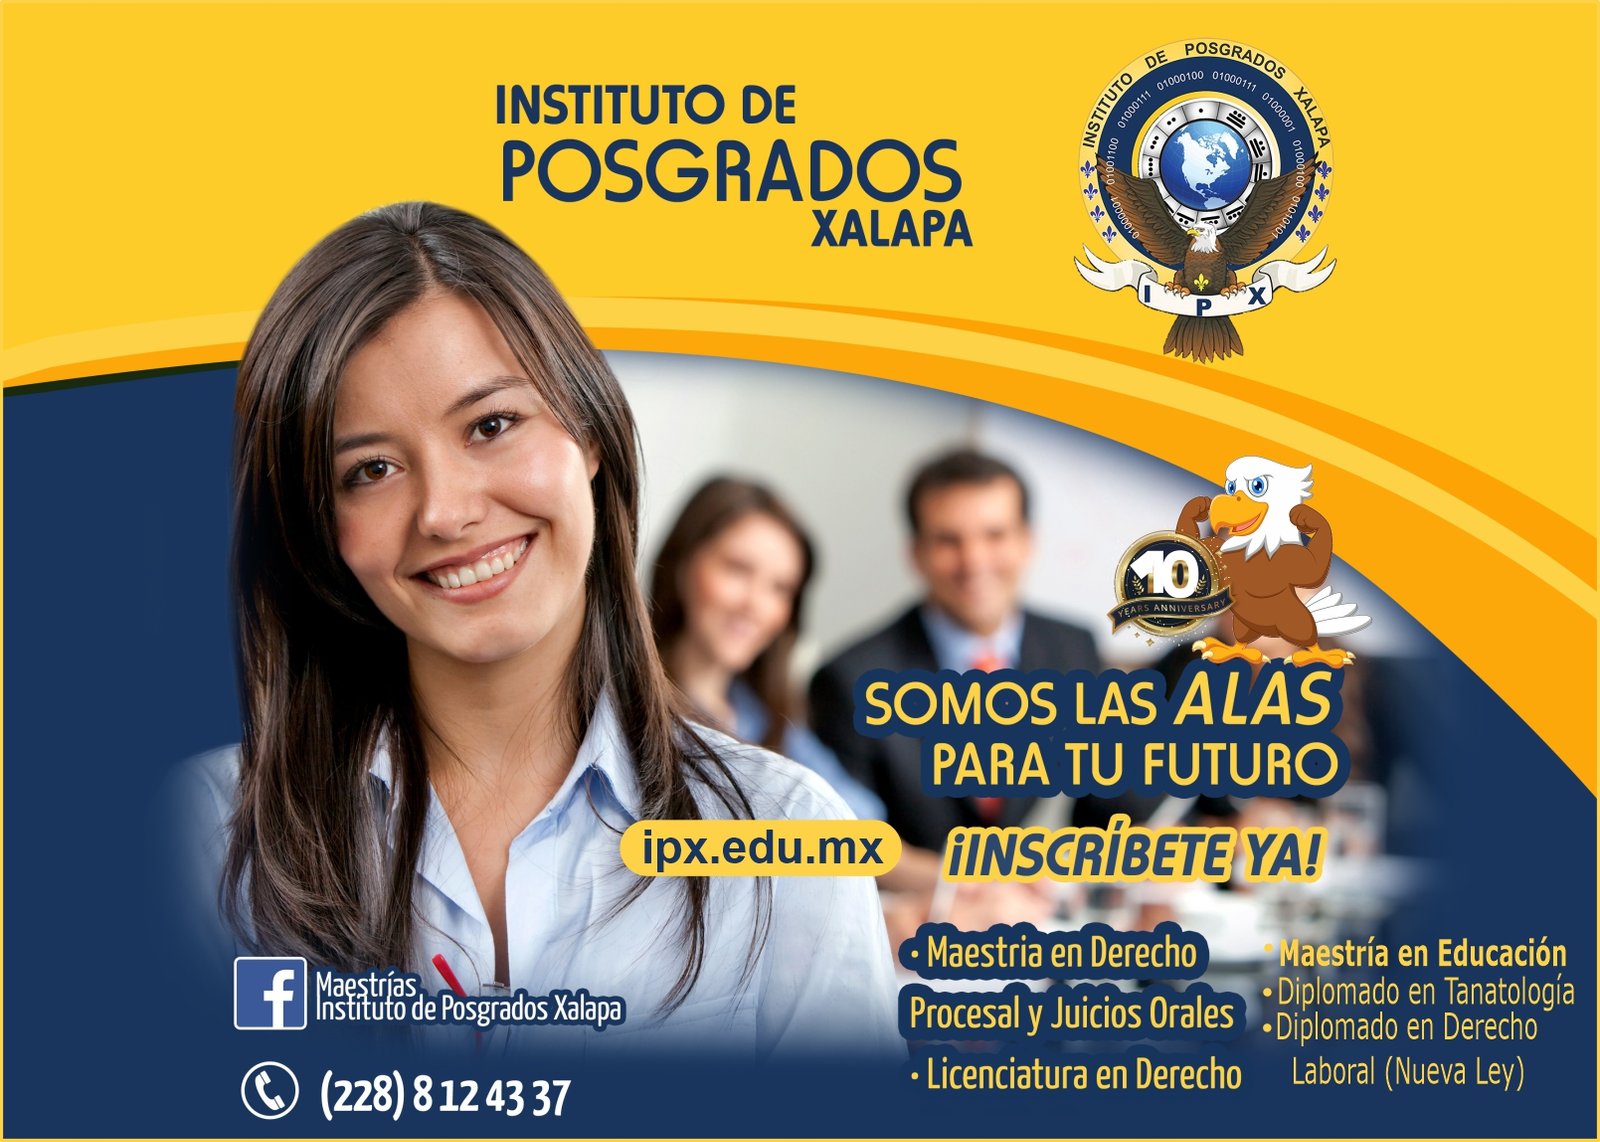 Bienvenidos al Instituto de Posgrados Xalapa